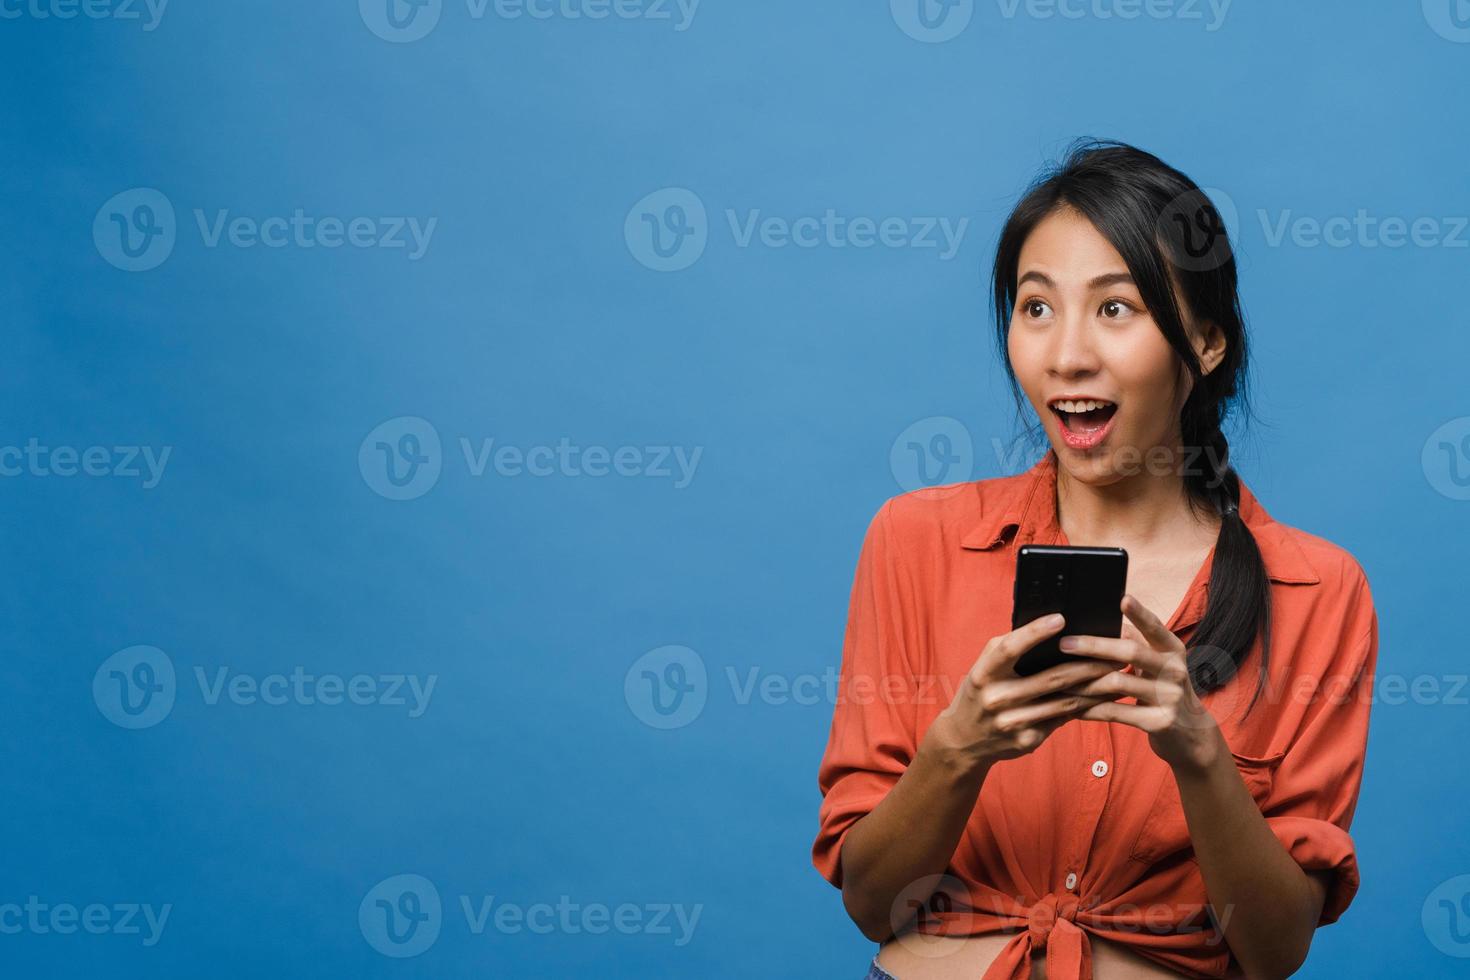 jeune femme asiatique utilisant un téléphone avec une expression positive, sourit largement, vêtue de vêtements décontractés, se sentant heureuse et isolée sur fond bleu. heureuse adorable femme heureuse se réjouit du succès. photo